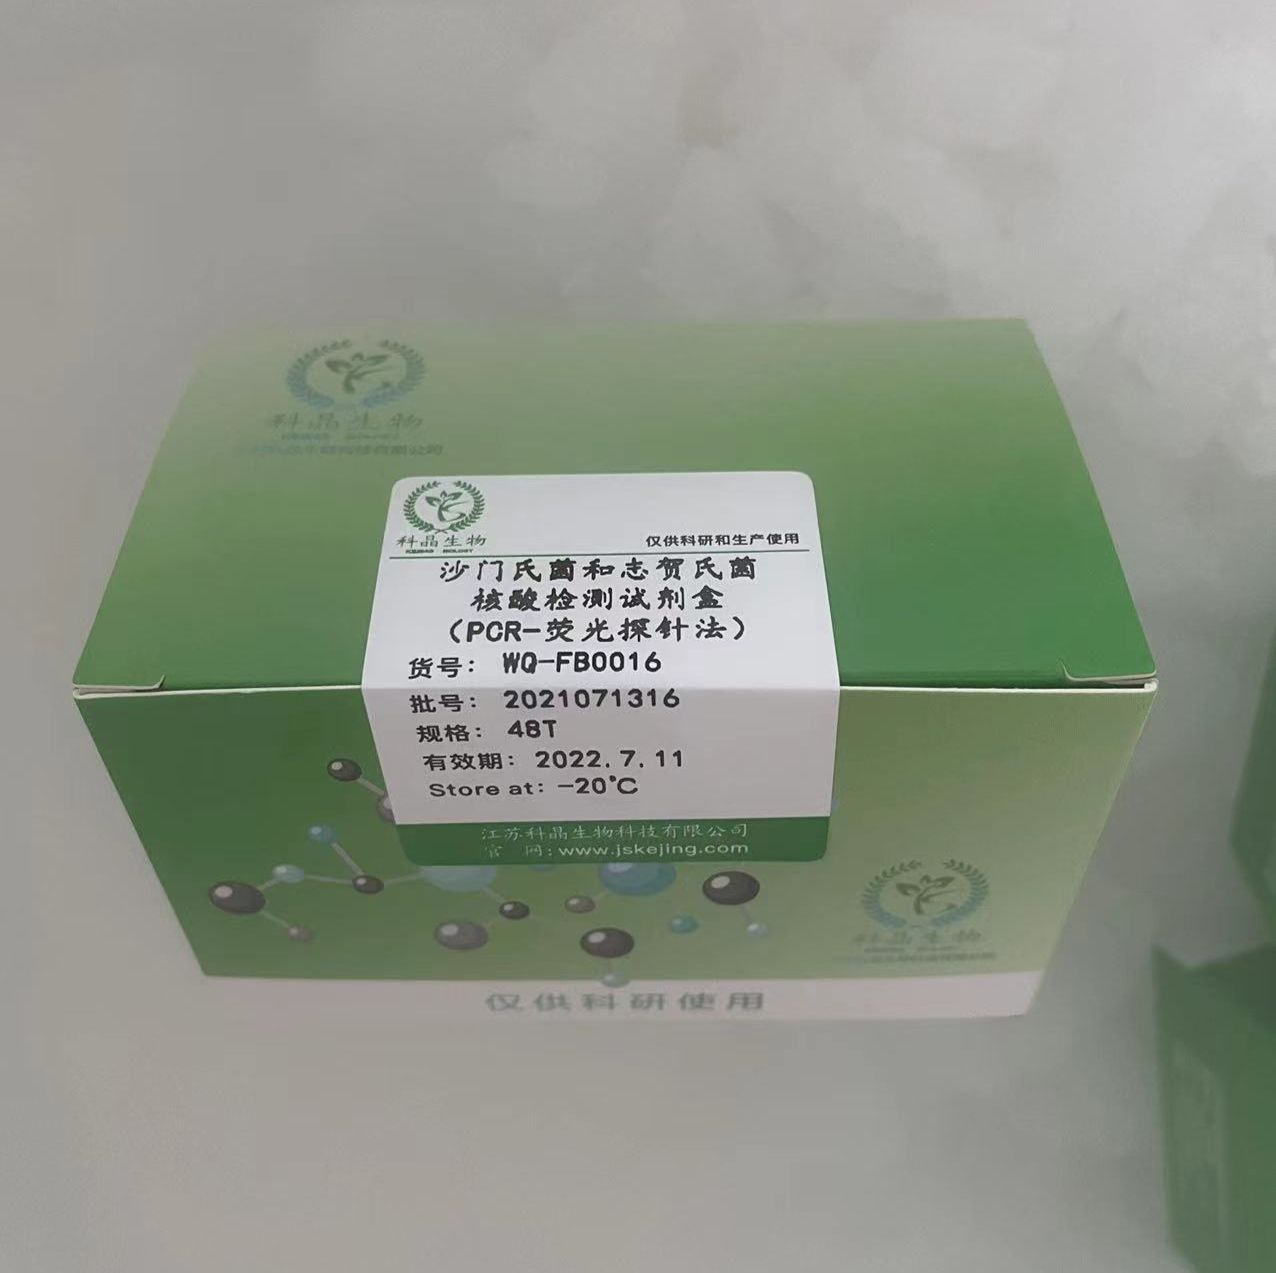 沙门氏菌和志贺氏菌核酸分型检测试剂盒（PCR-荧光探针法）